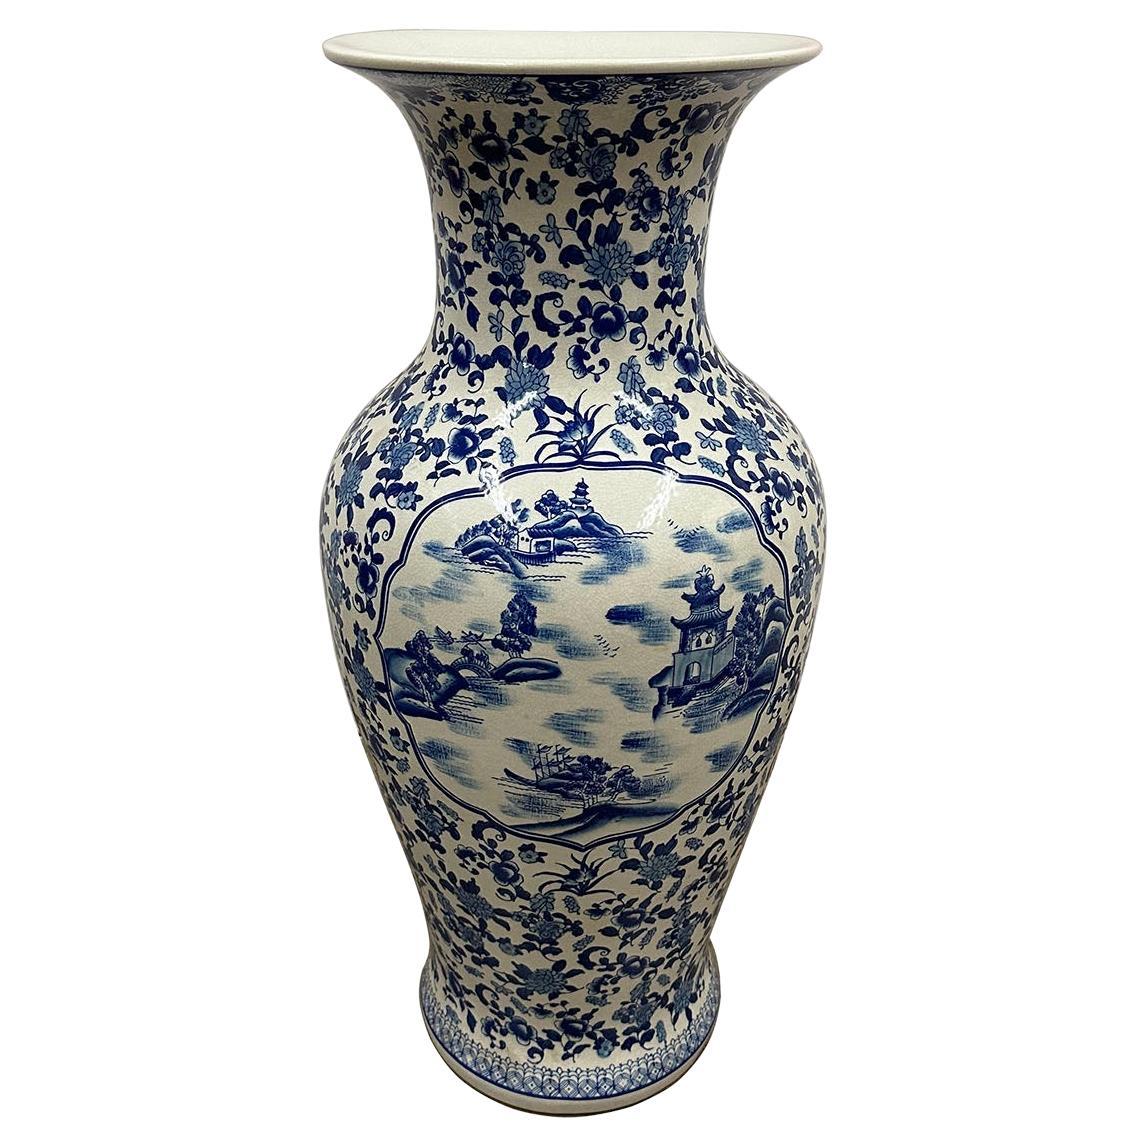 Chinesische Vase aus weißem und blauem Porzellan des späten 19. Jahrhunderts